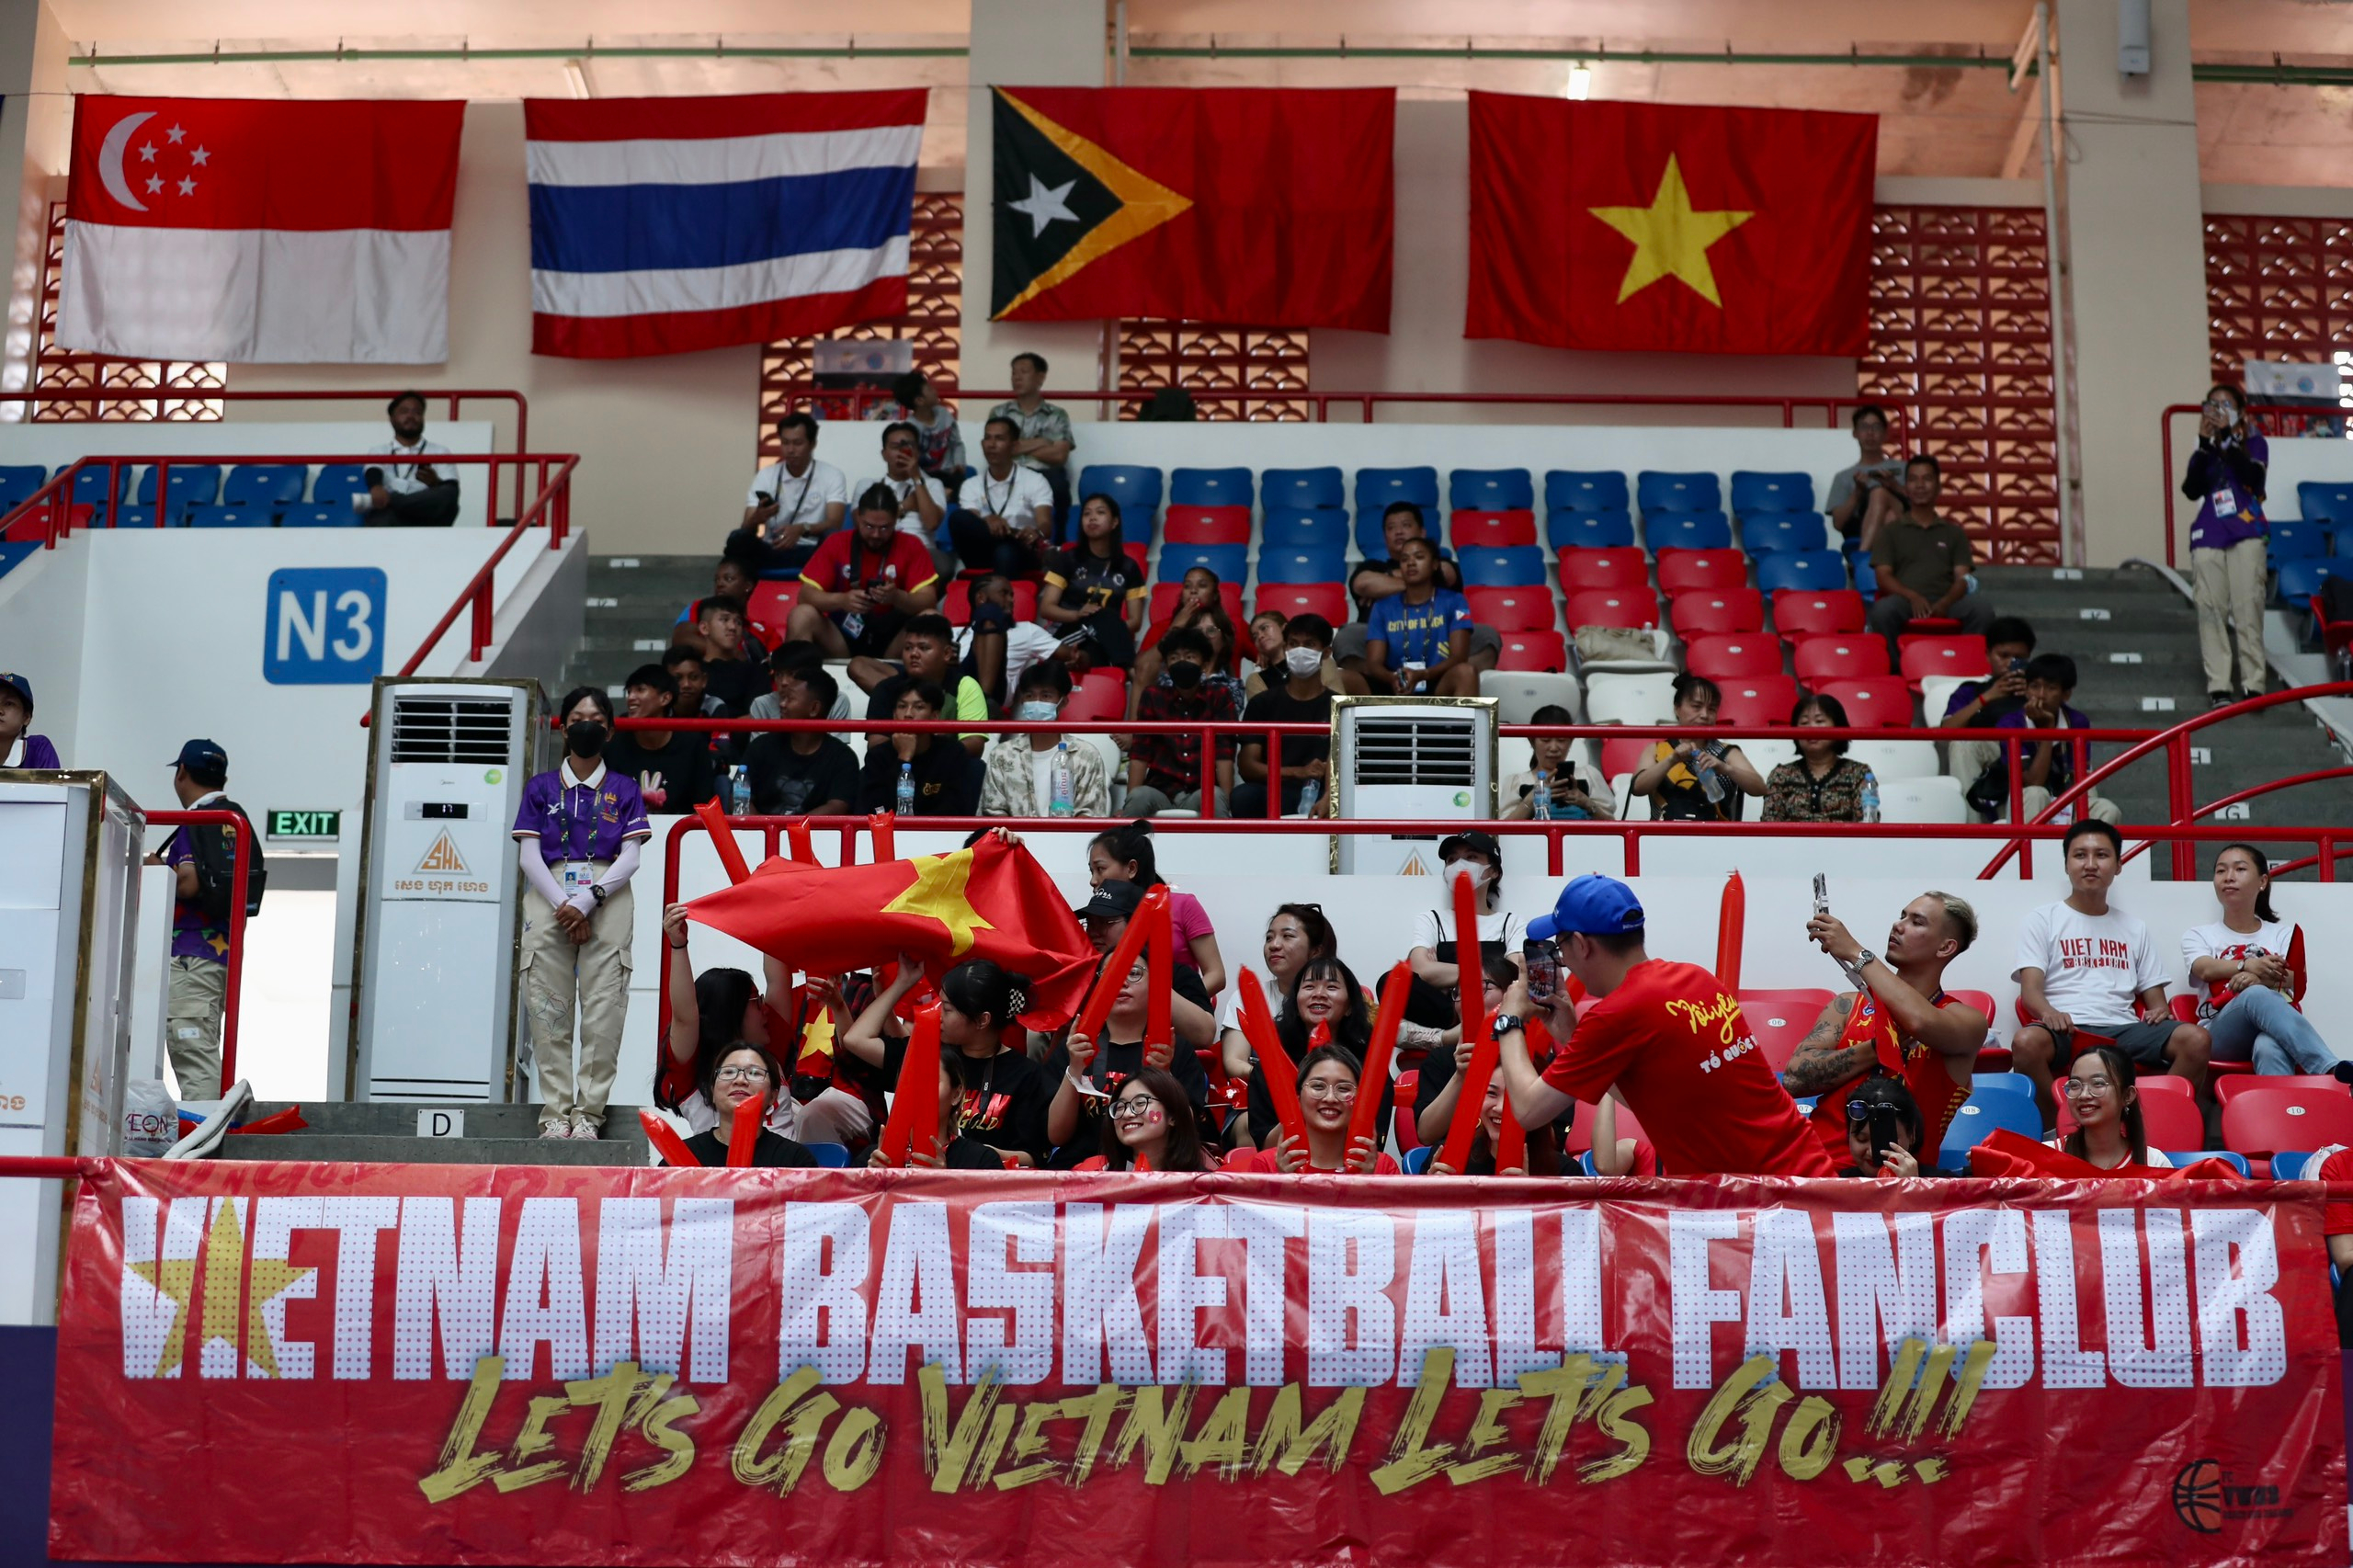 Nữ bóng rổ Việt Nam thắng Philippines ở trận ra quân với tỉ số 21-19. Ảnh: Thanh Vũ